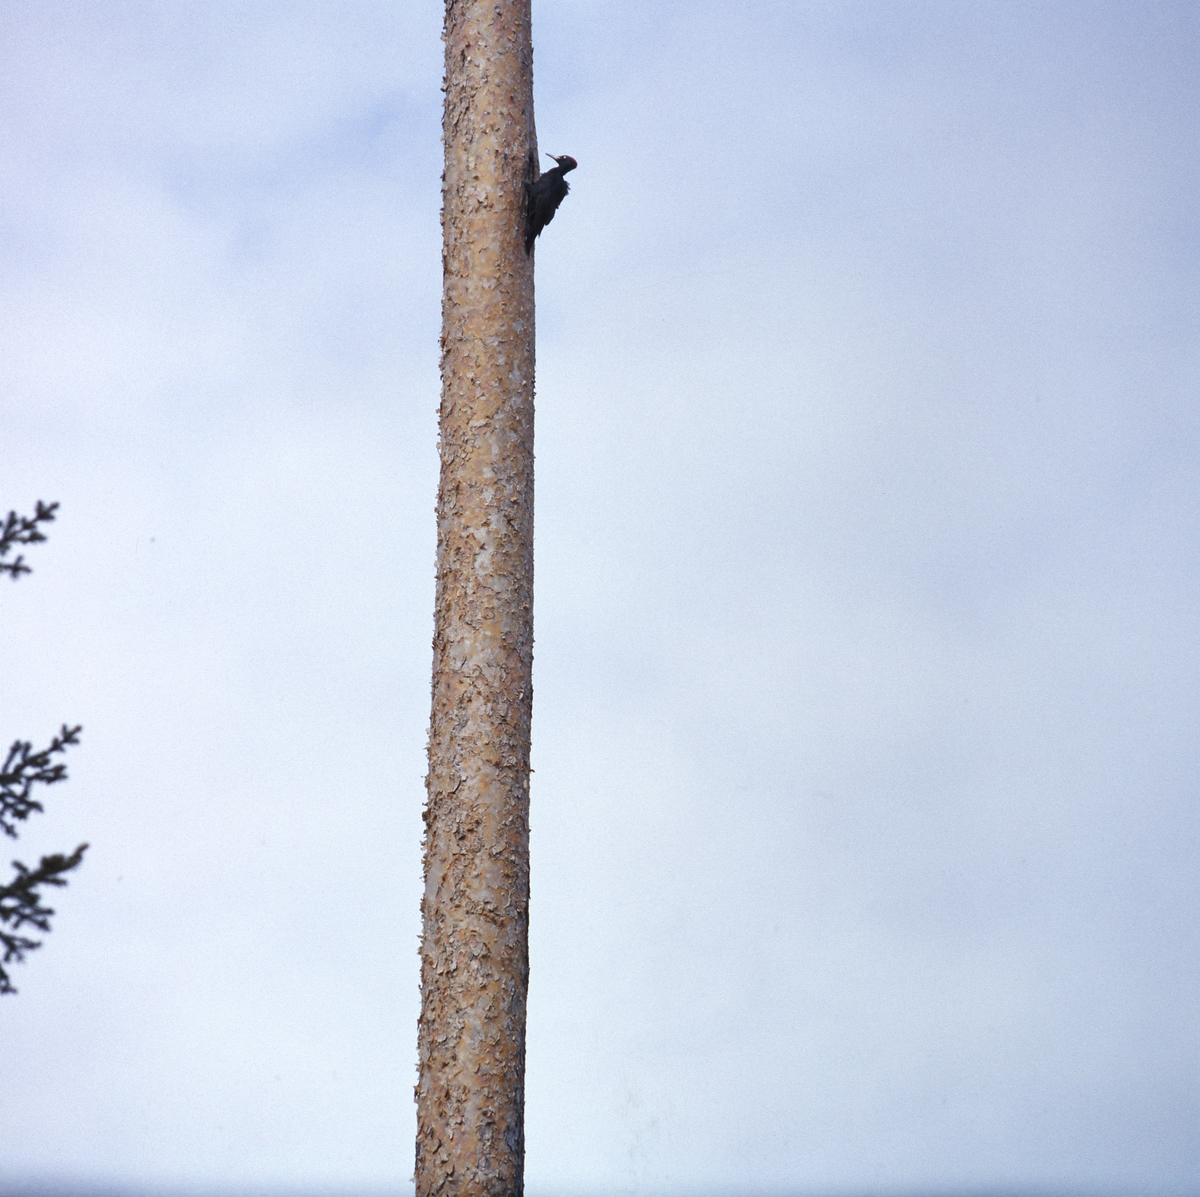 En spillkråka sitter högt upp på en tallstam. Blå himmel med lätta moln.